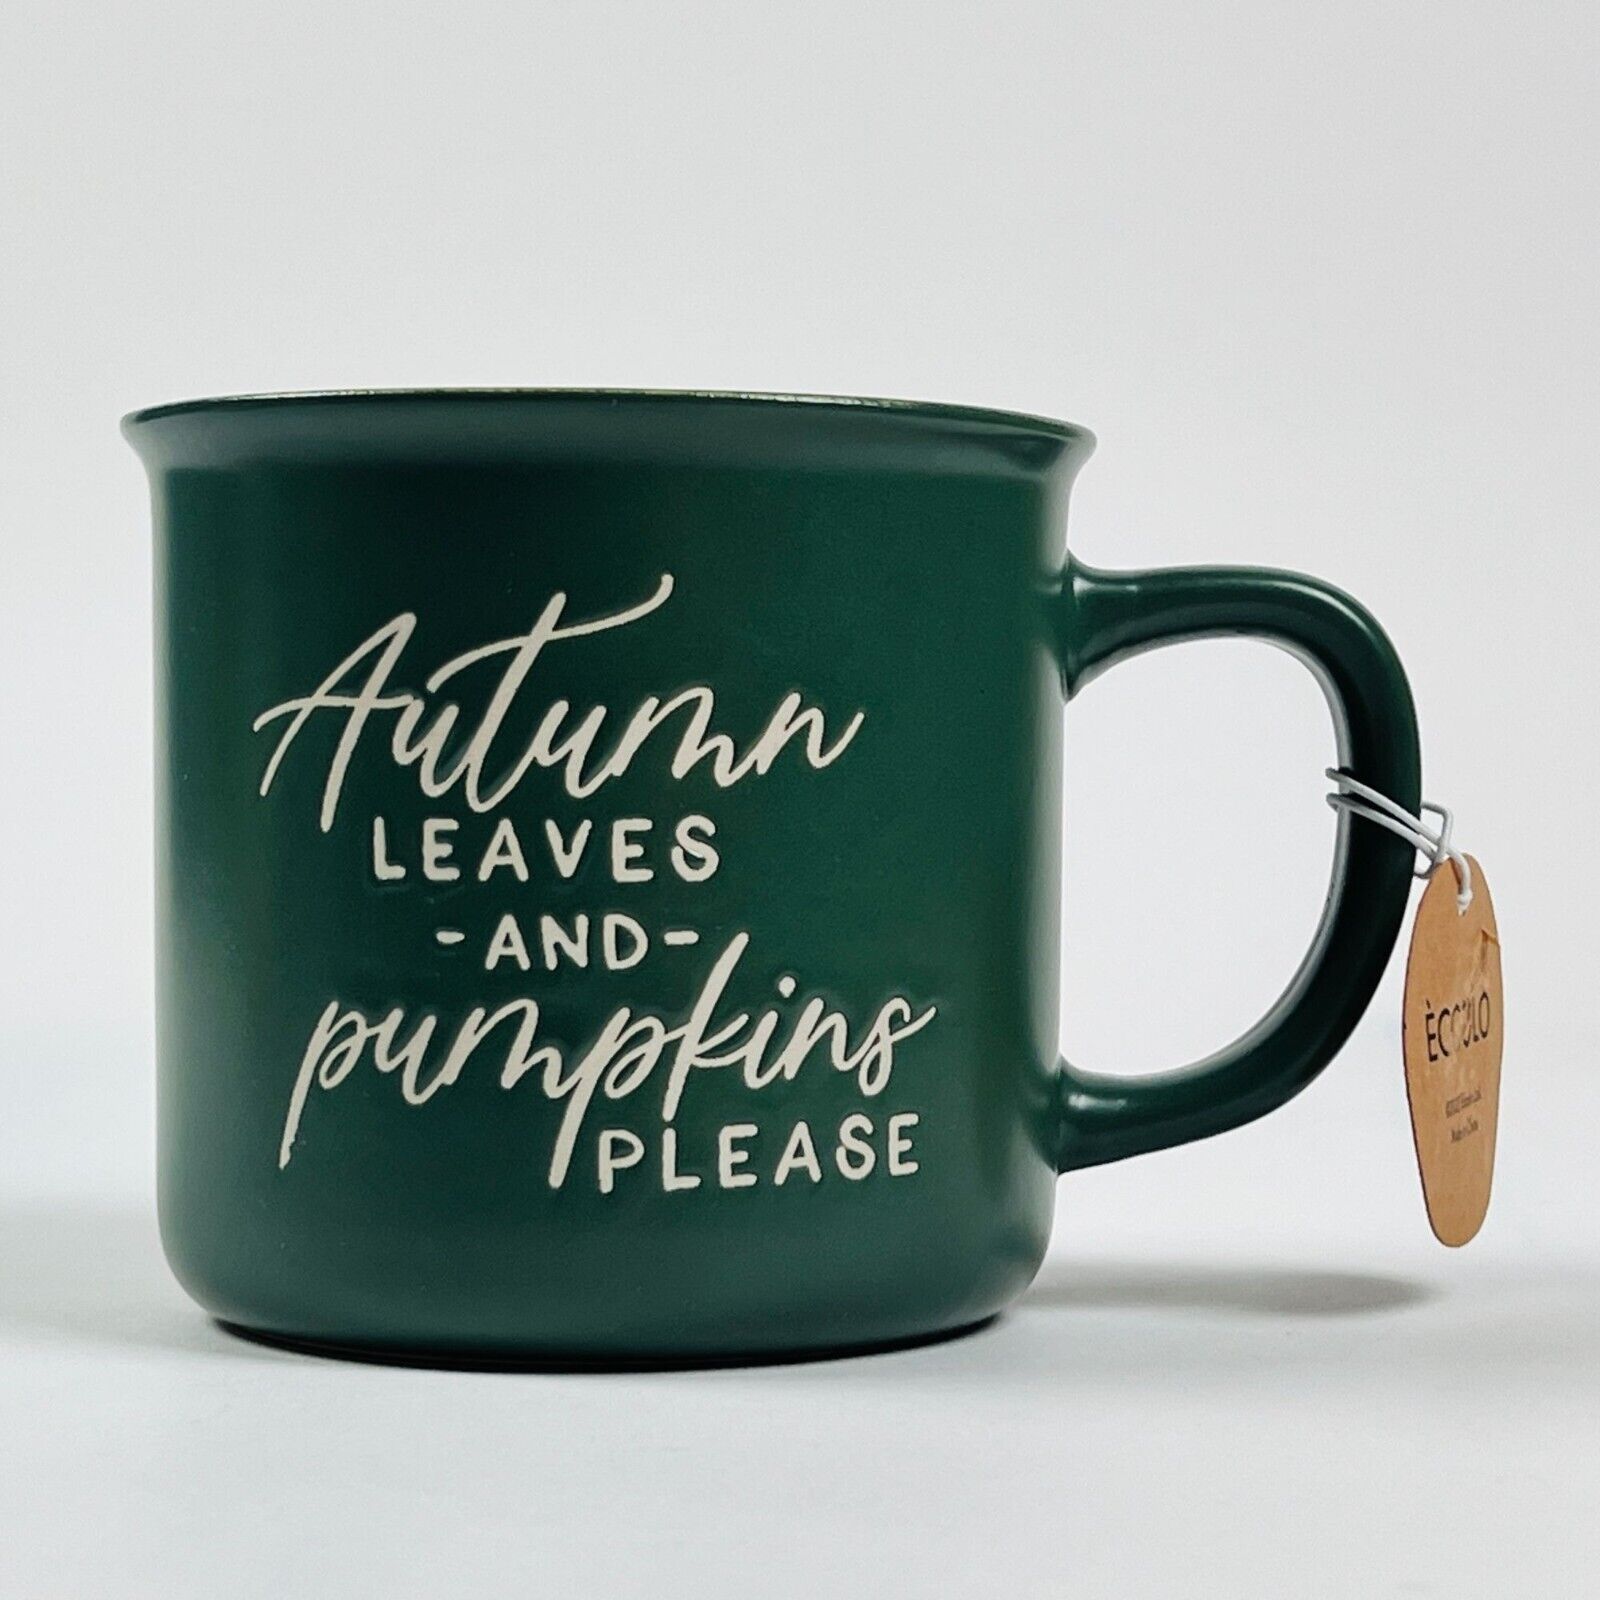 Eccolo 2022 Green Autumn Leaves & Pumpkin Please 18 oz Coffee Mug